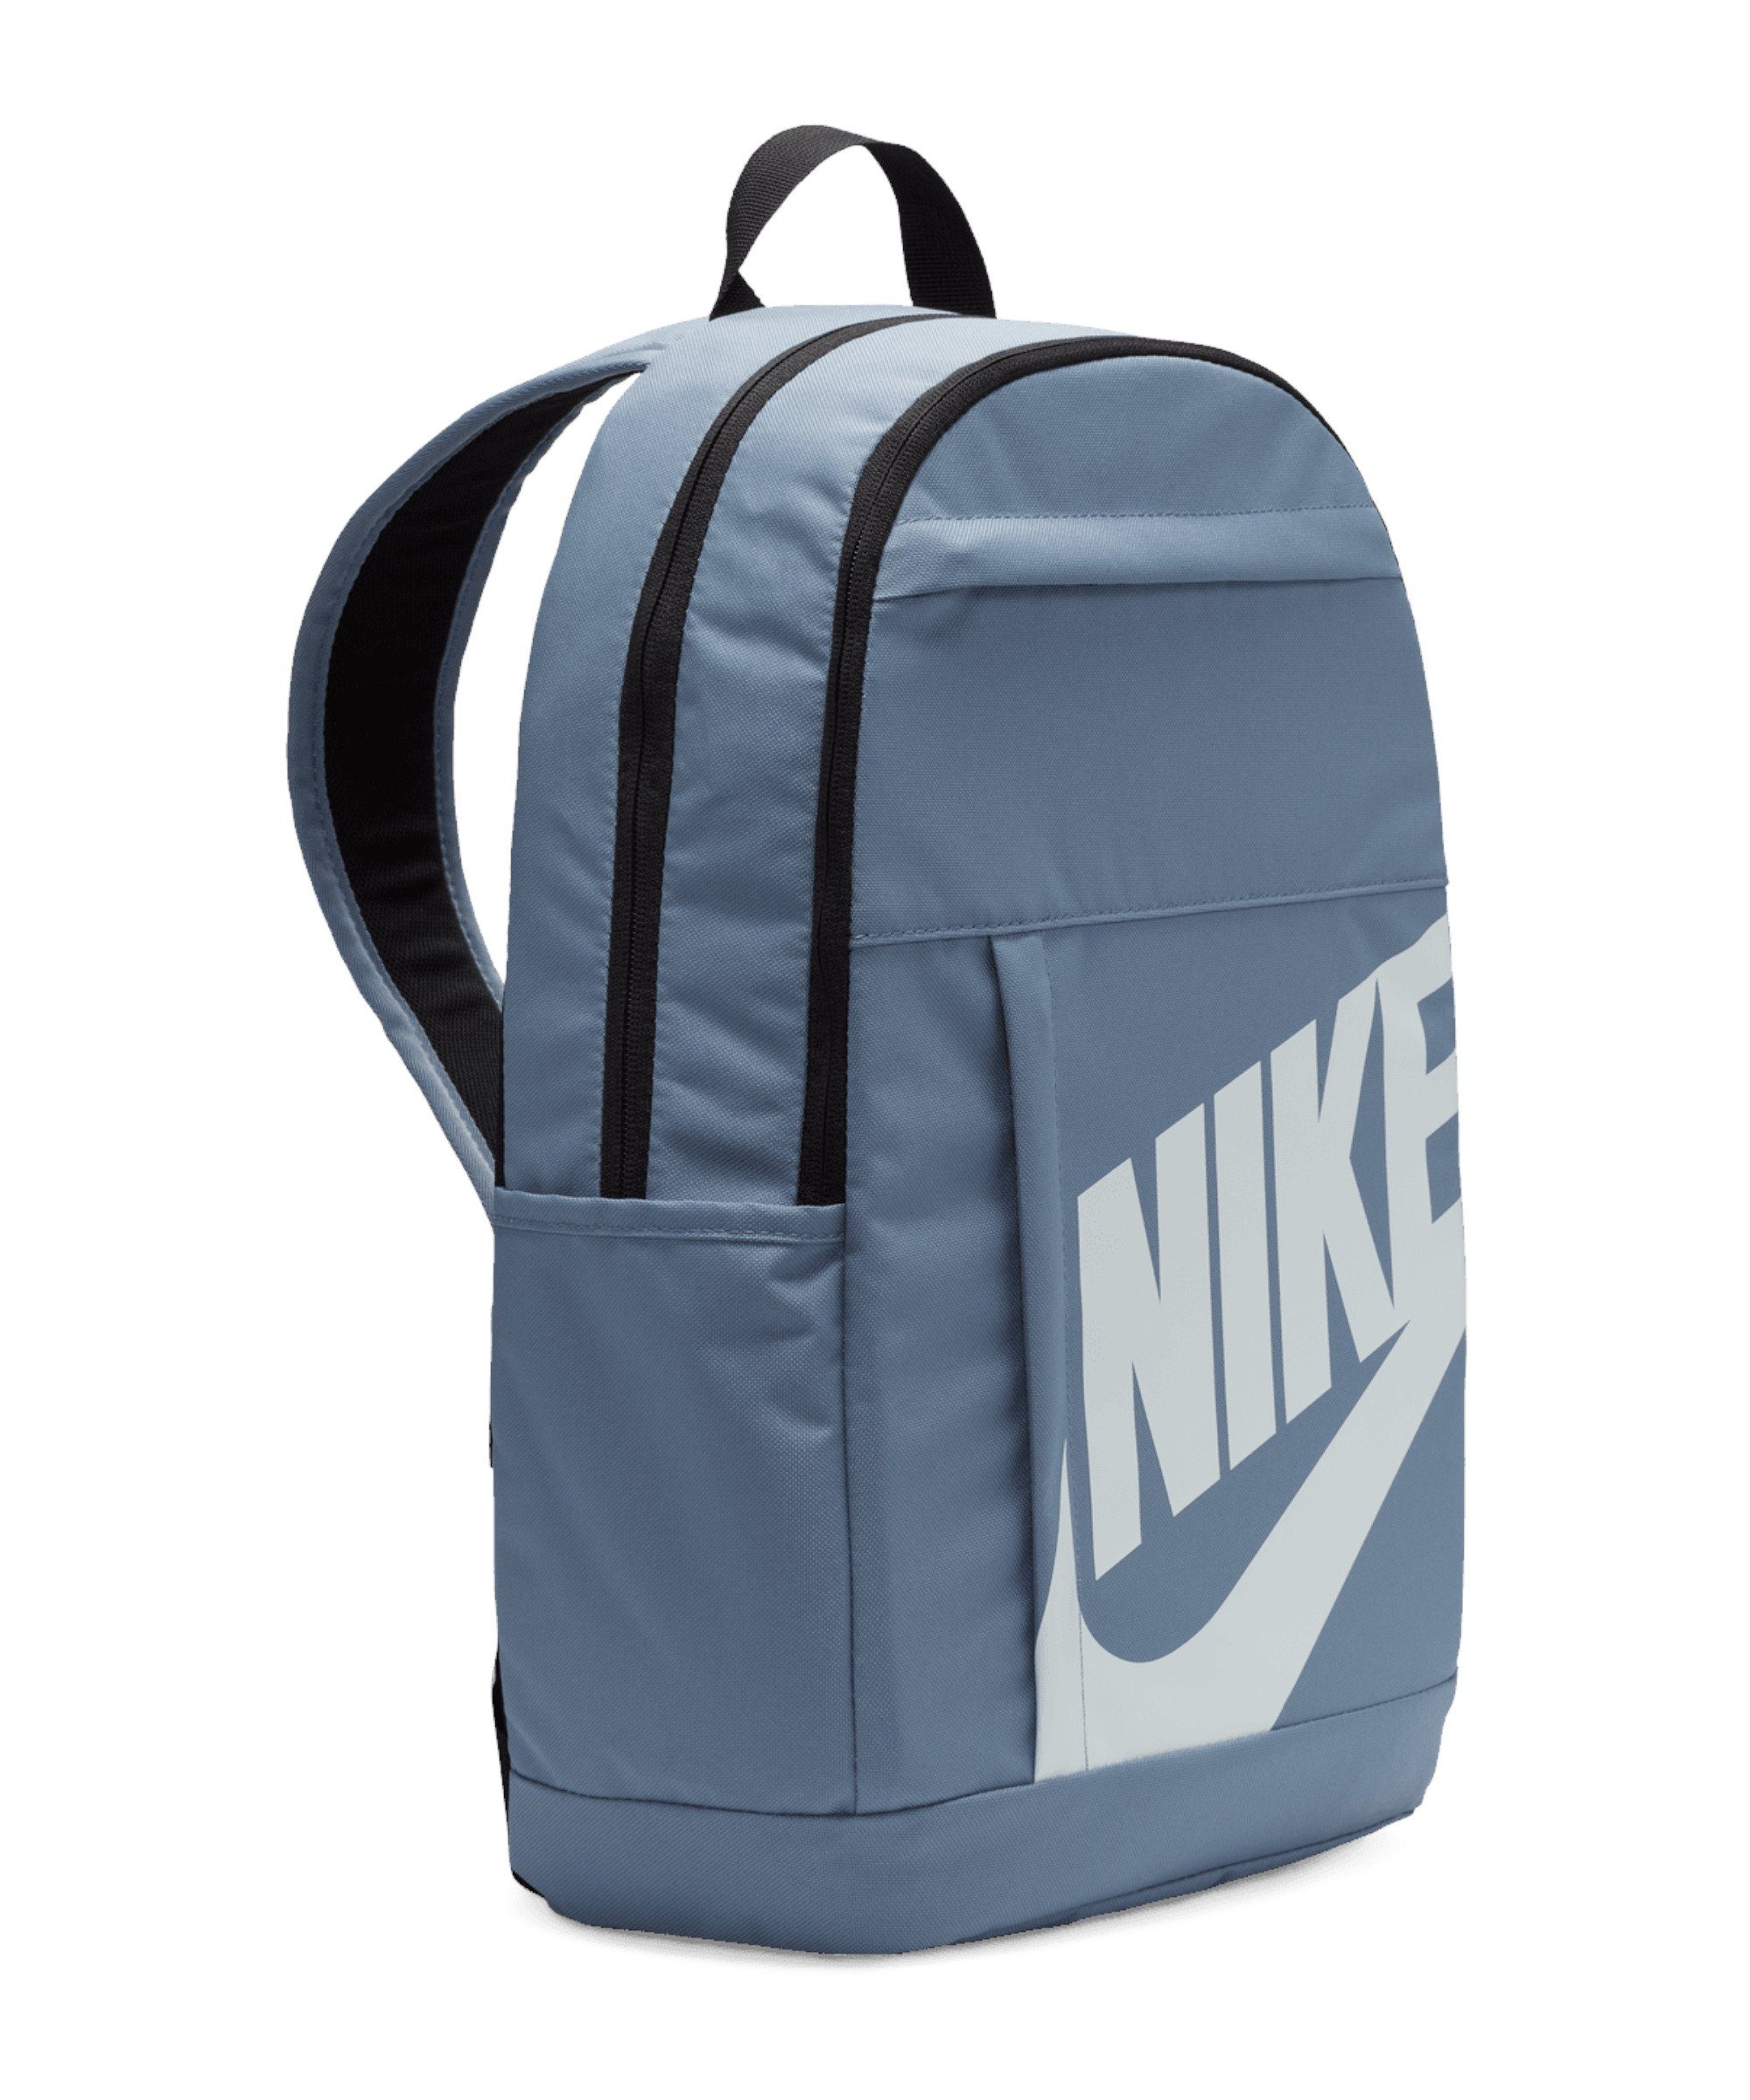 Nike Sportswear Abendtasche Elemental Rucksack, default